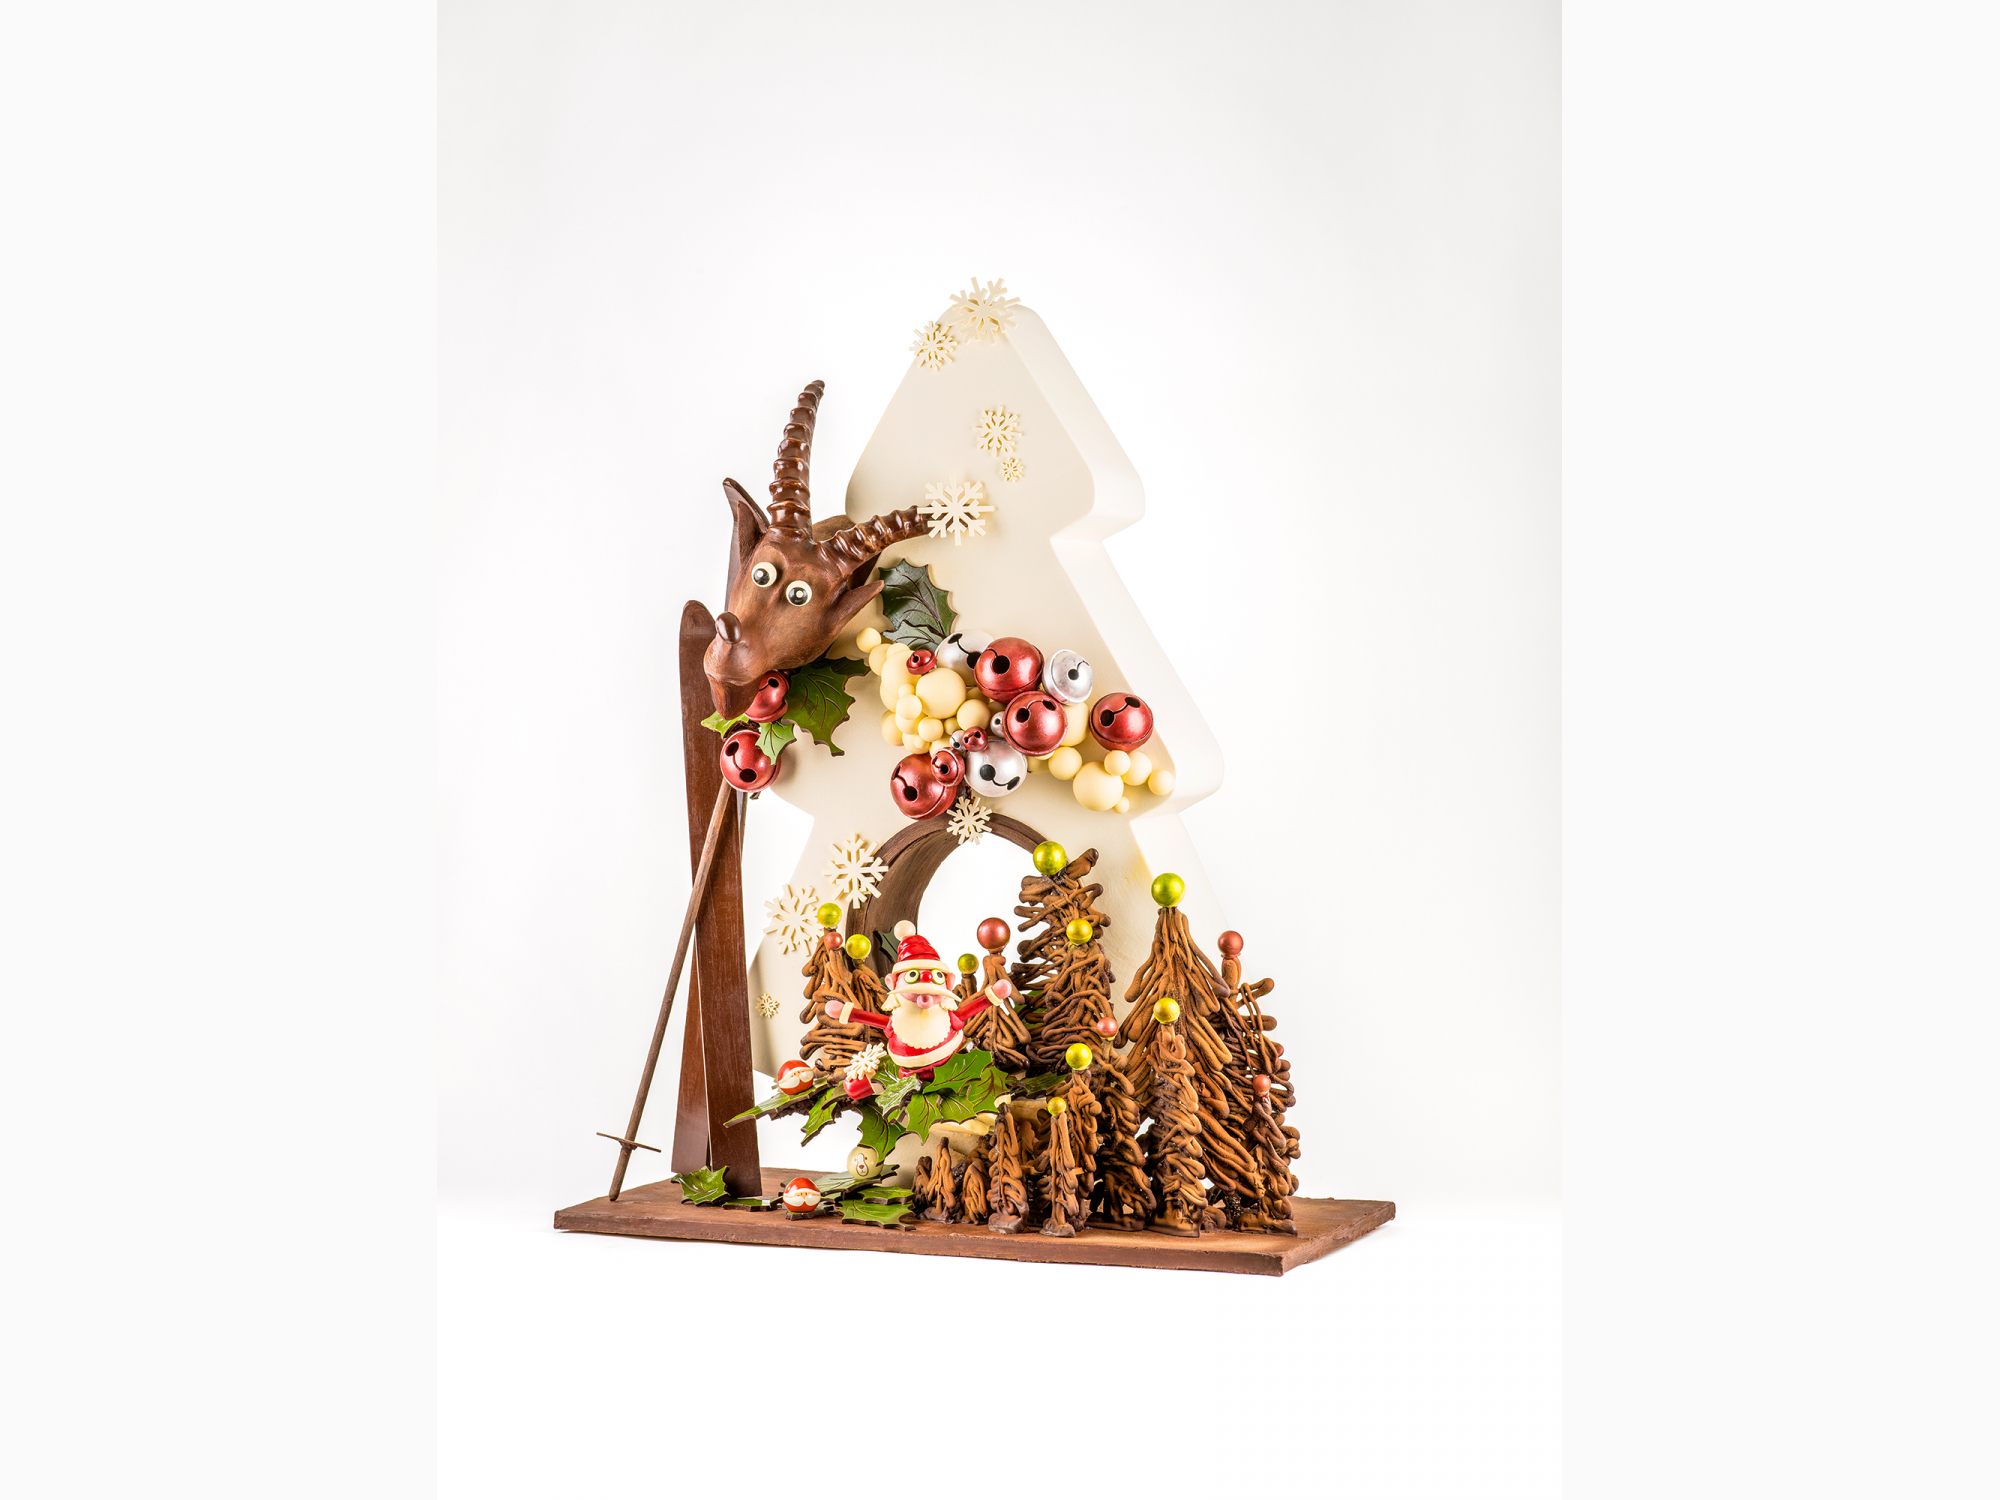 Fabrice Gillotte - Sculpture des Champignons entièrement réalisée en  chocolat, par Fabrice Gillotte 🍄🍂 #fabricegillotte #gillotte #sculpture  #chocolate #chocolat